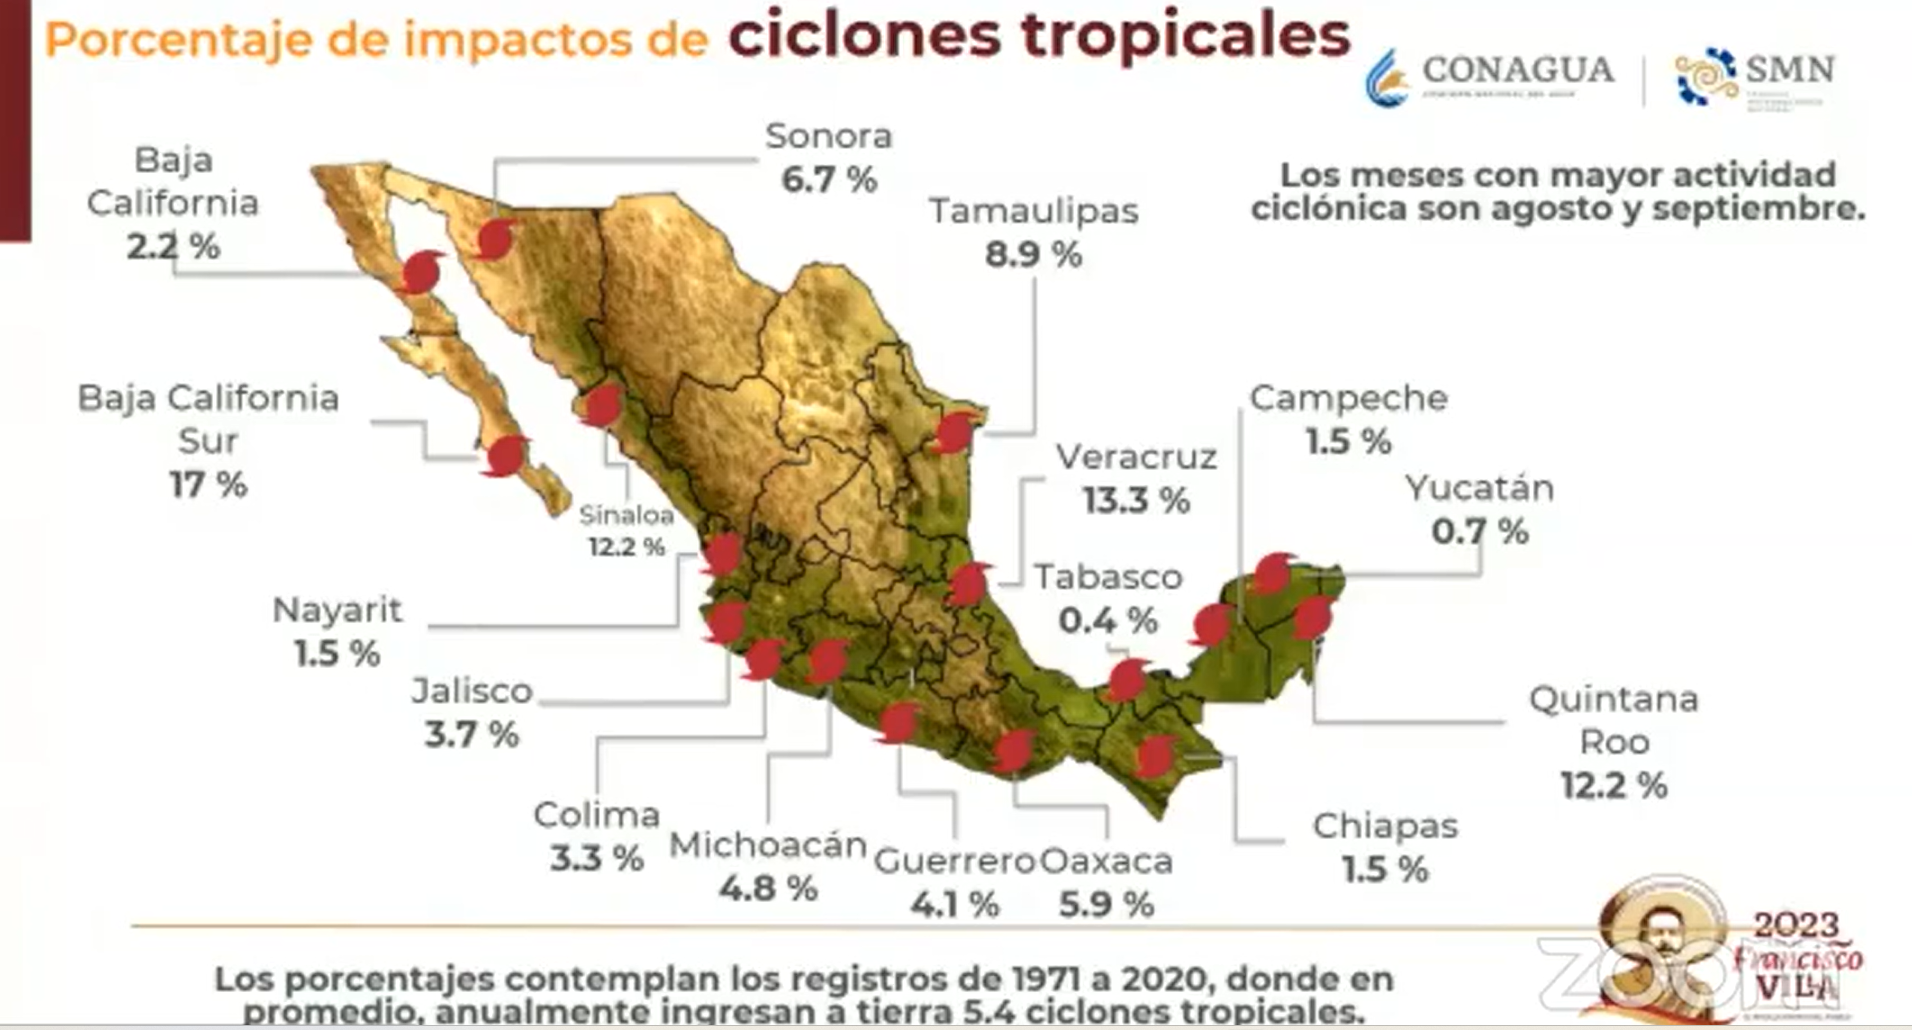 El segundo estado con mayor probabilidad de ser impactado por un ciclón tropical es Quintana Roo (Conagua)